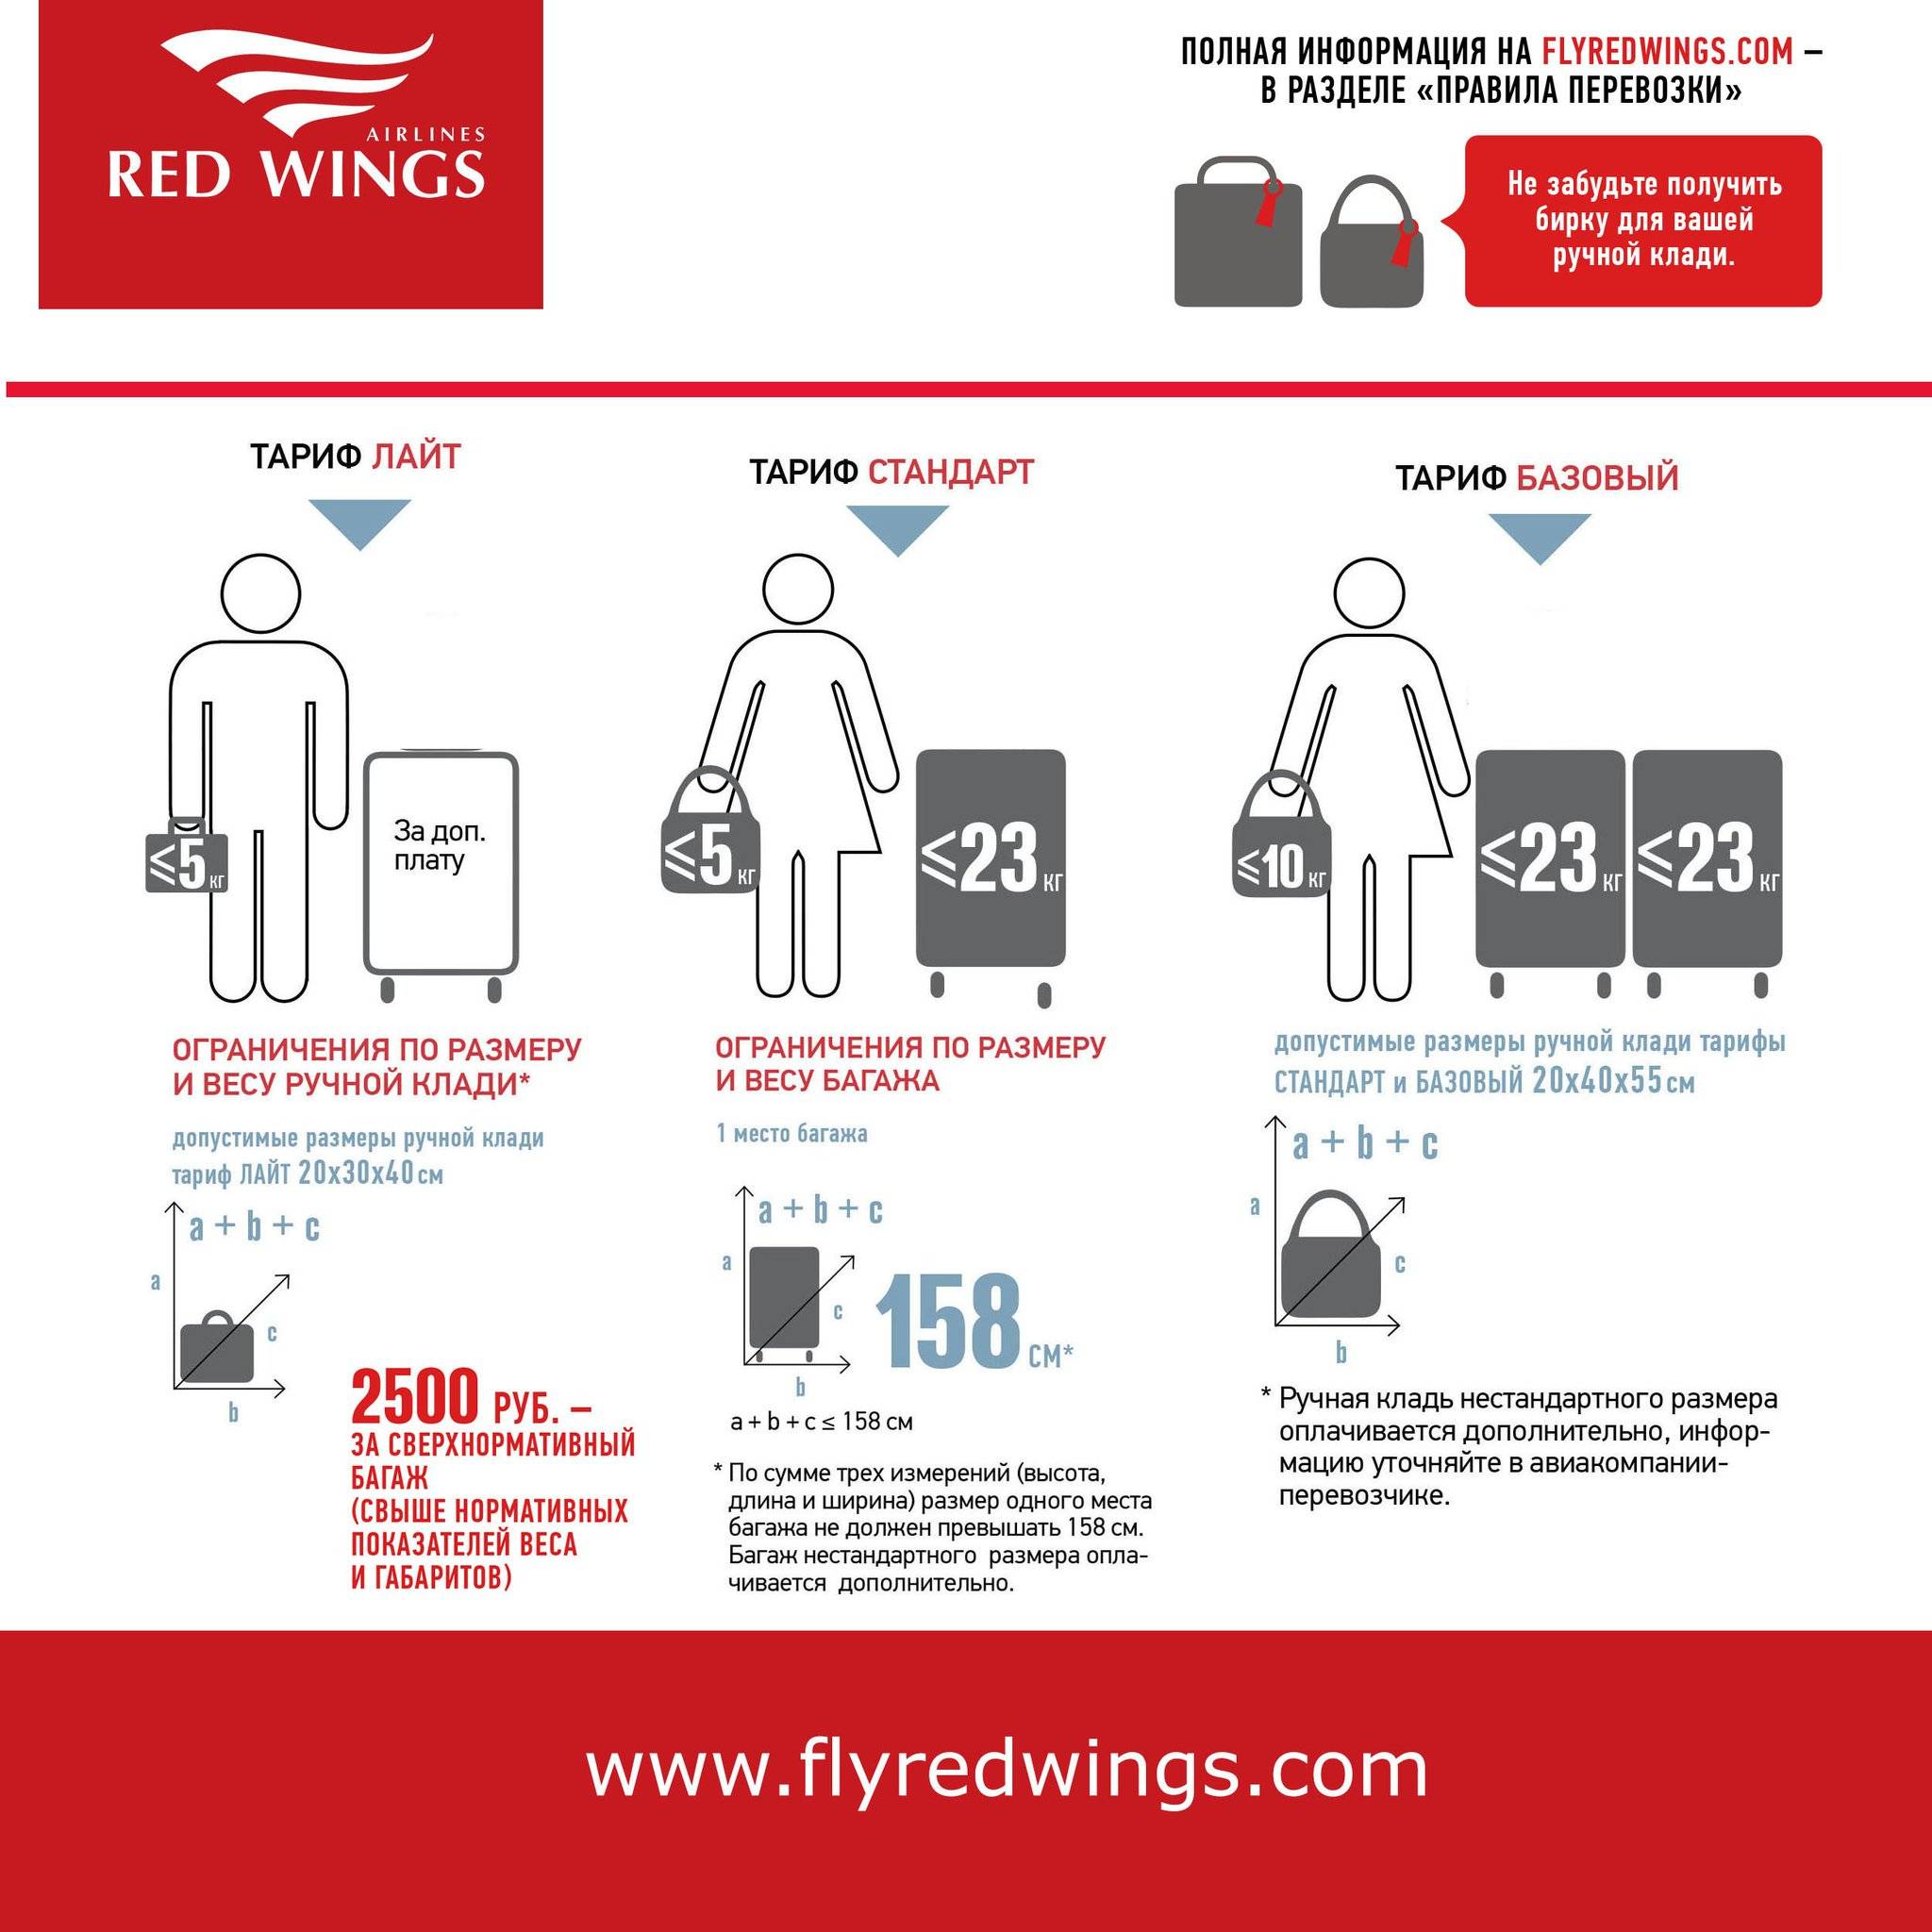 Правила перевозки багажа и ручной клади в авиакомпании ryanair